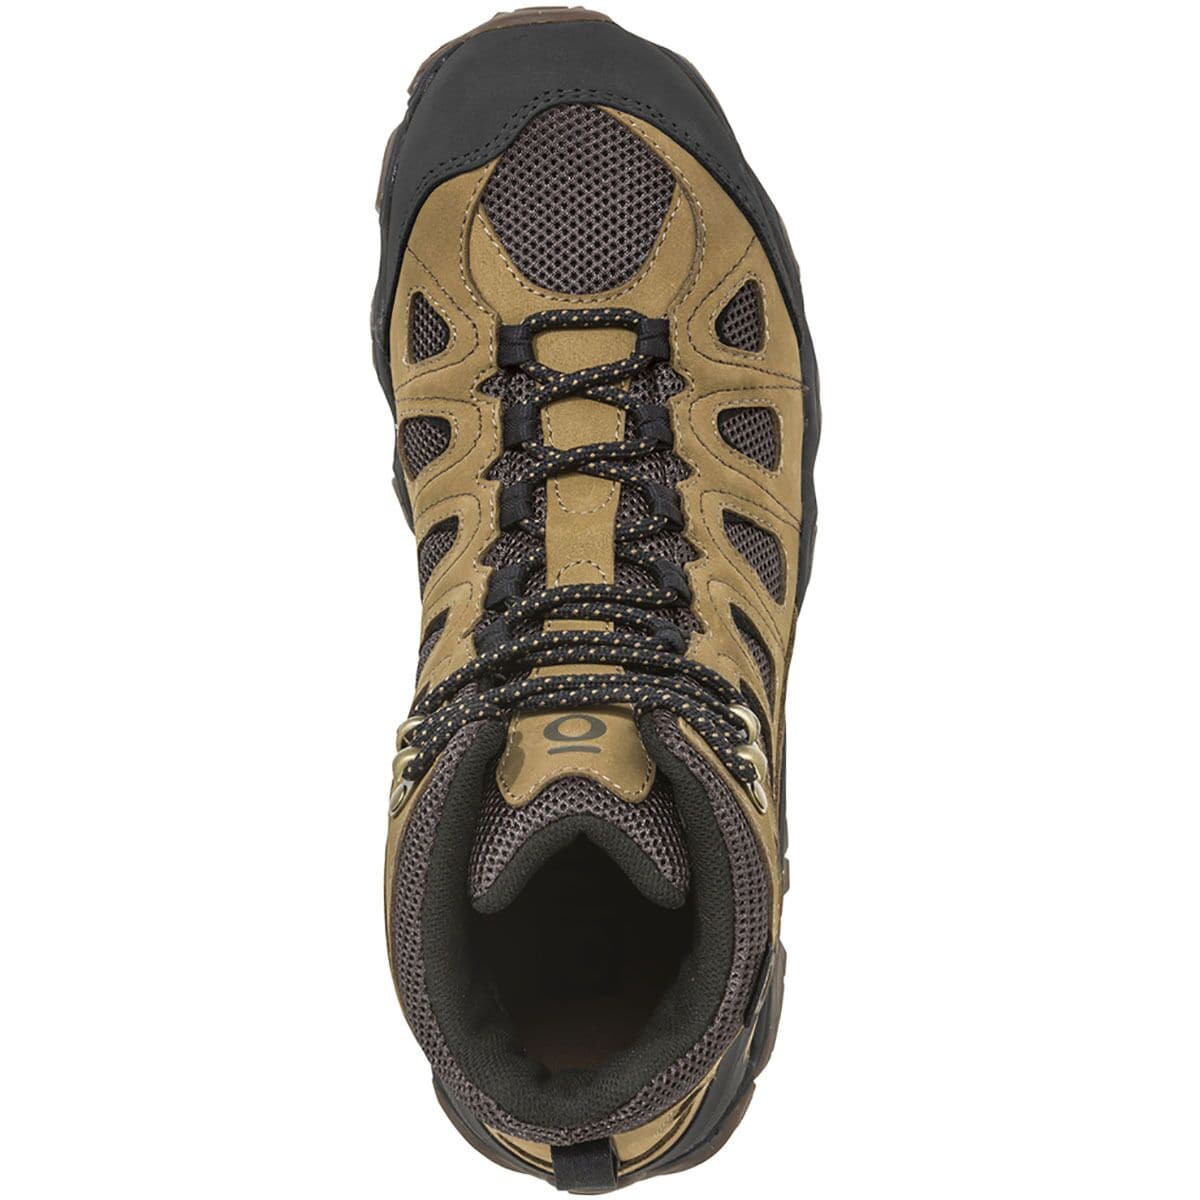 Oboz Sawtooth II Mid B-Dry Hiking Boot - Men's - Footwear